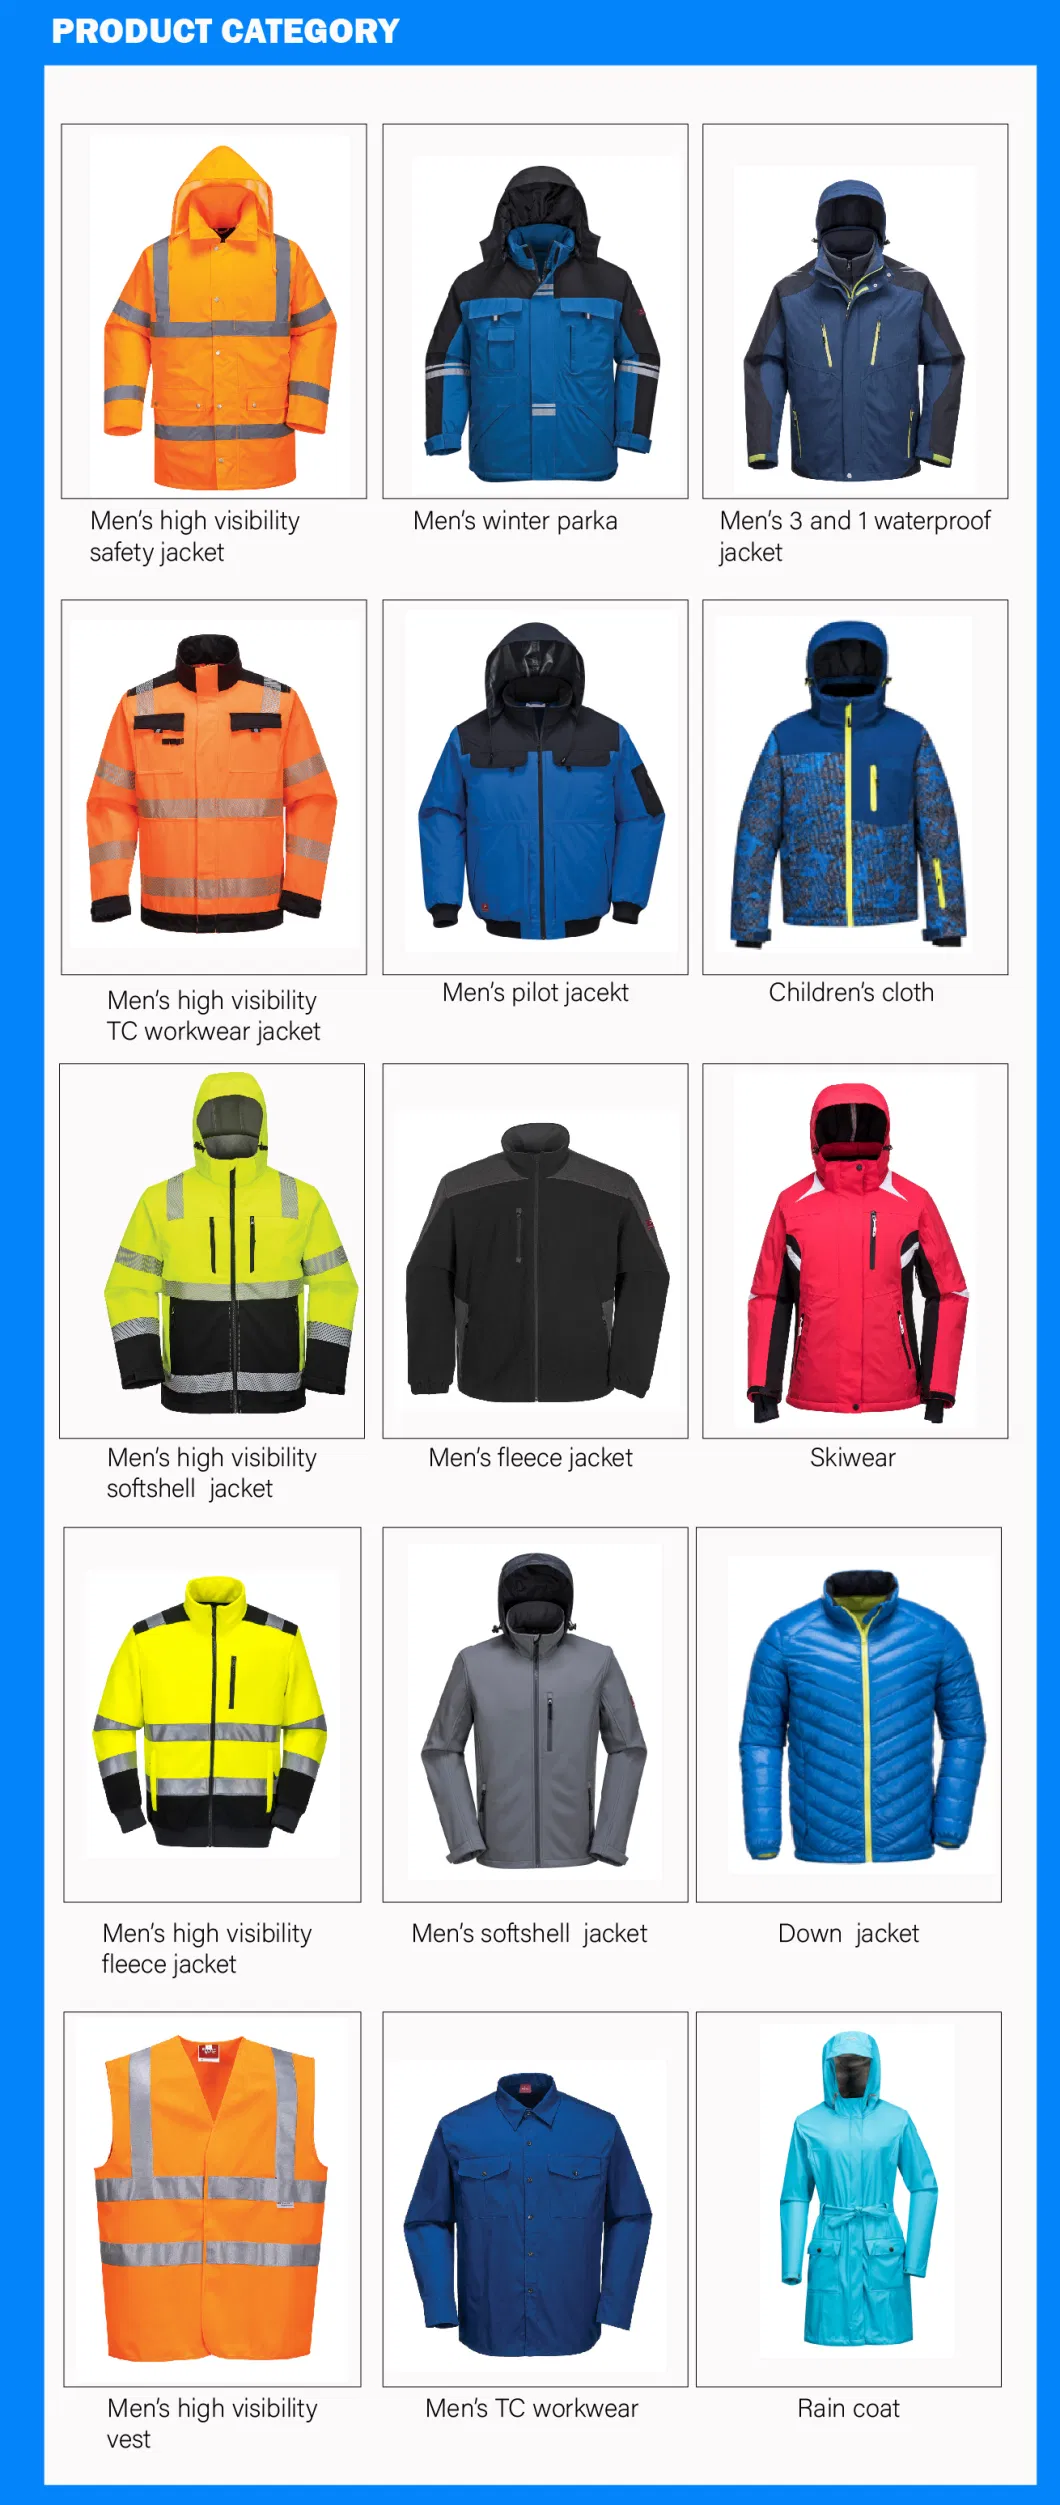 Safety Workwear Eniso20471 Hi Vis Parka Jacket Reflective Winter Parka